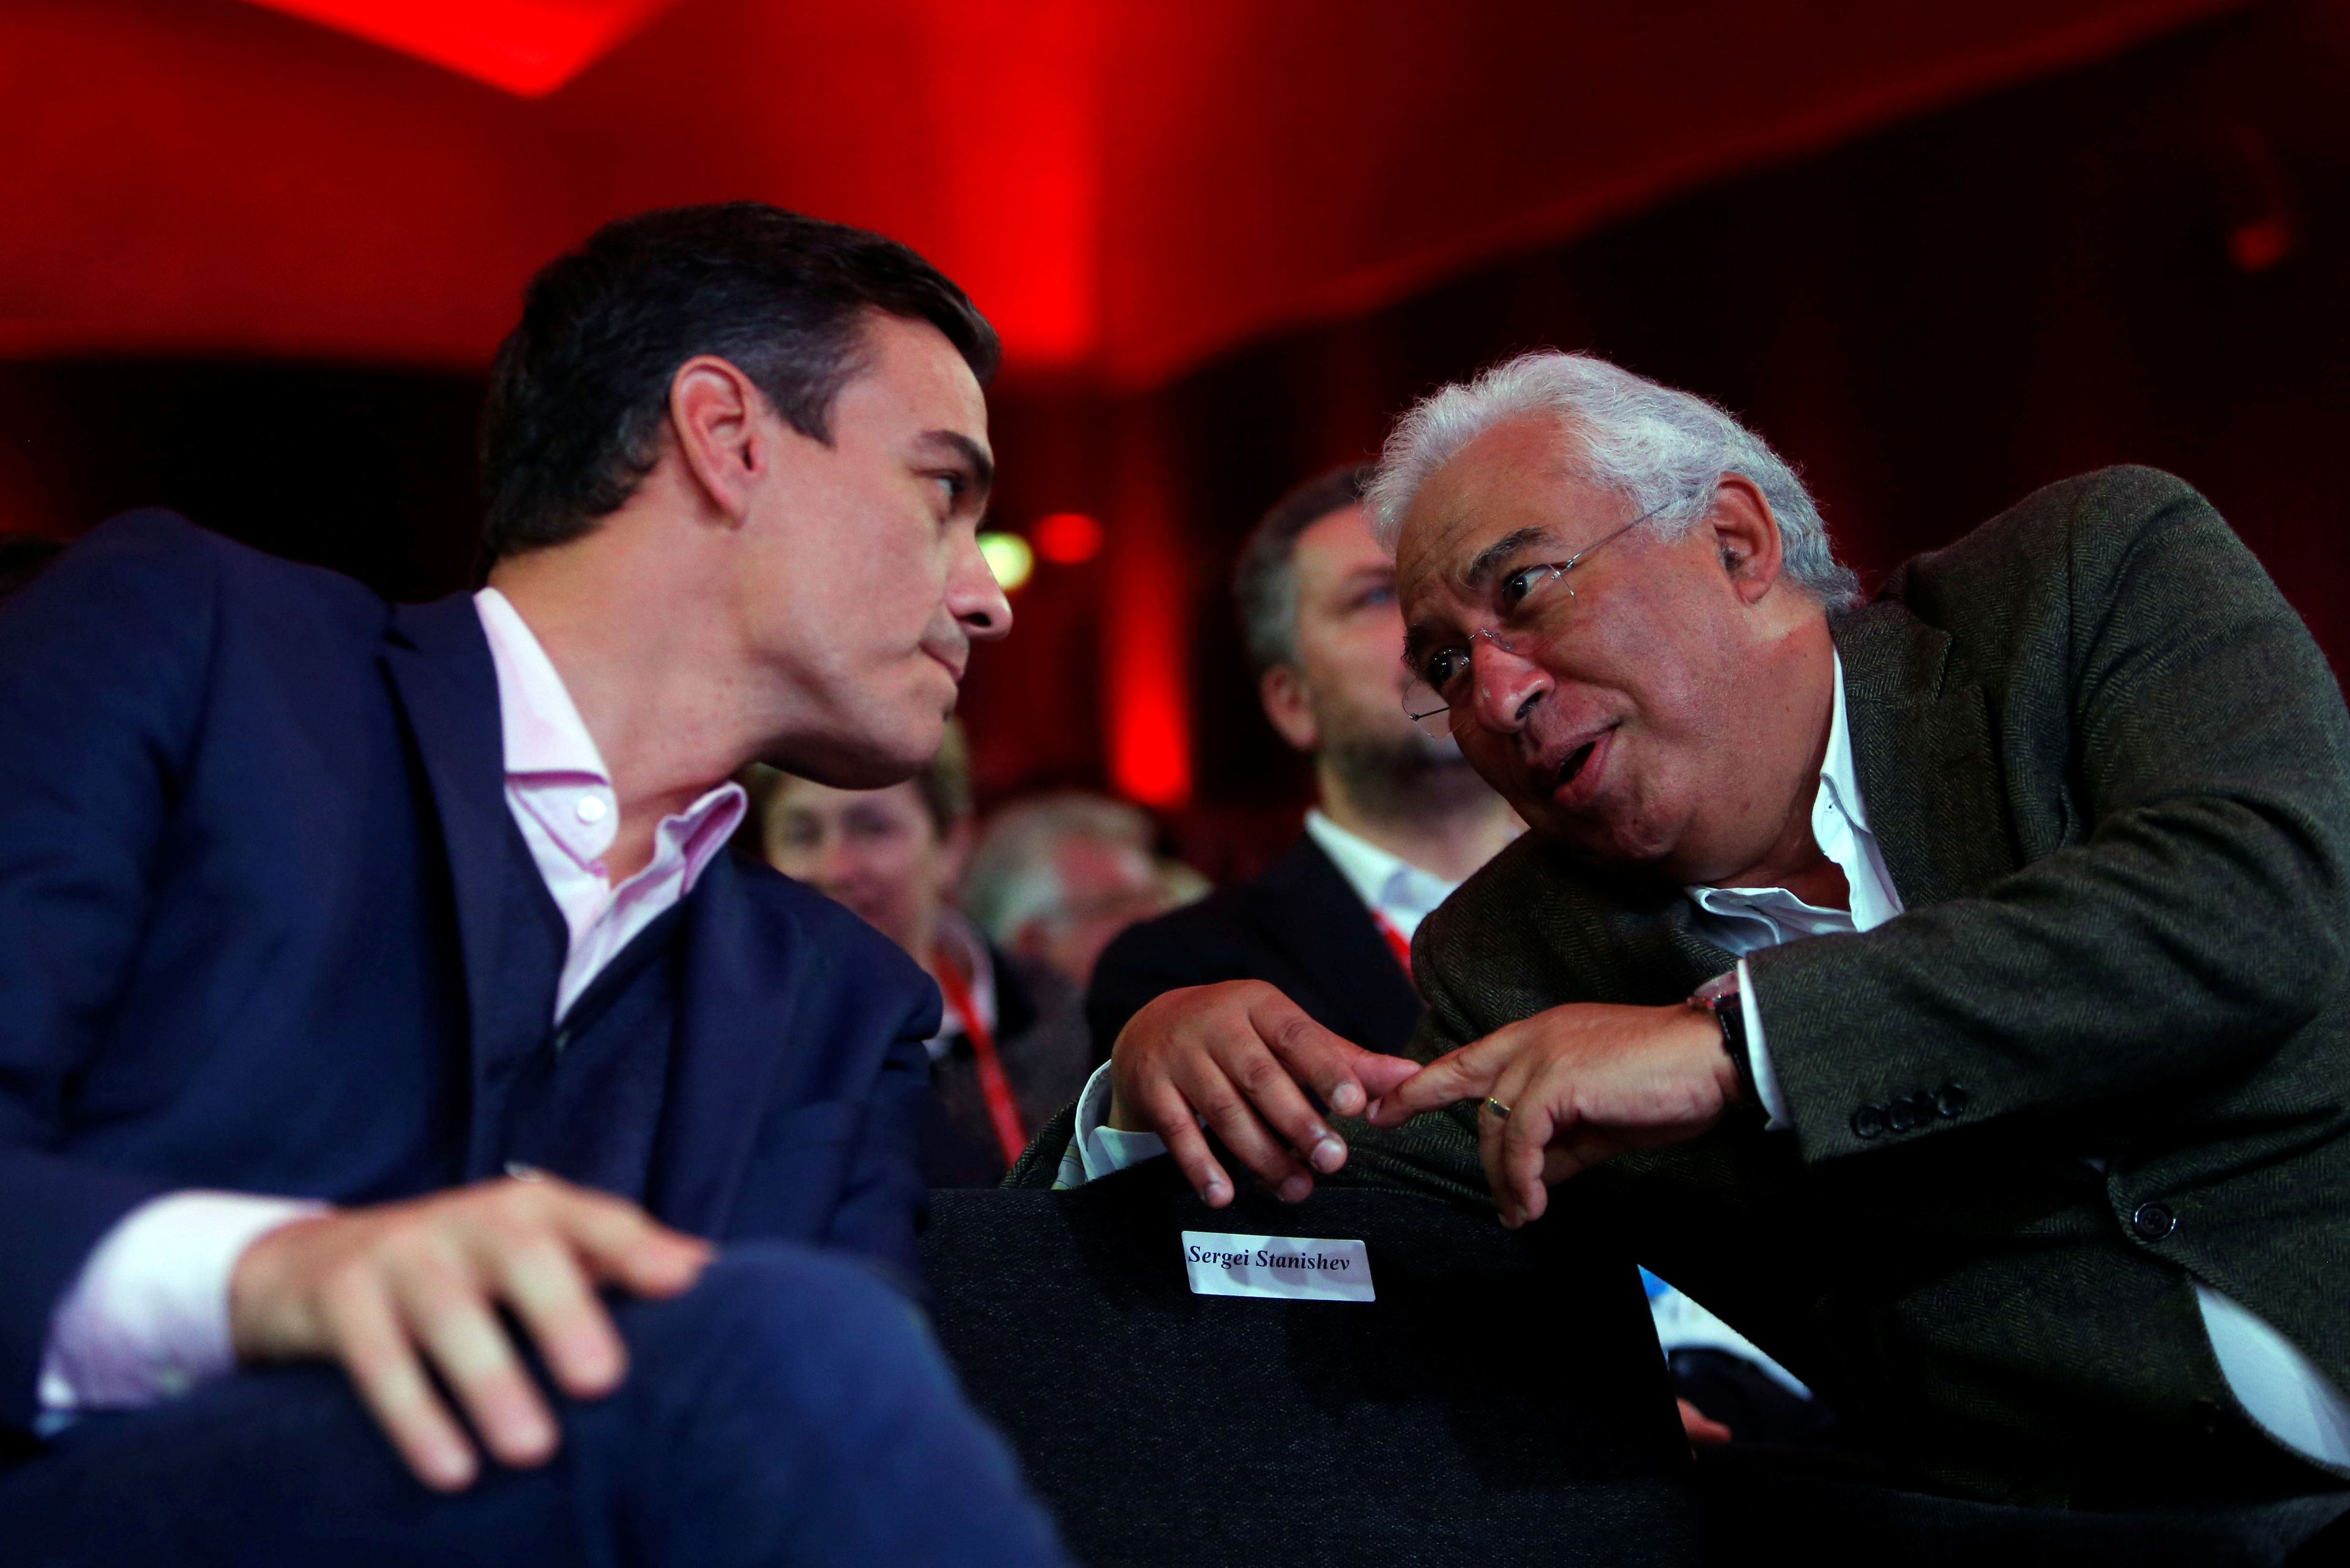 Pedro Sánchez y António Costa, líderes socialistas de España y Portugal durante la reunión anual de Partidos Socialistas europeos en Lisboa en 2018.